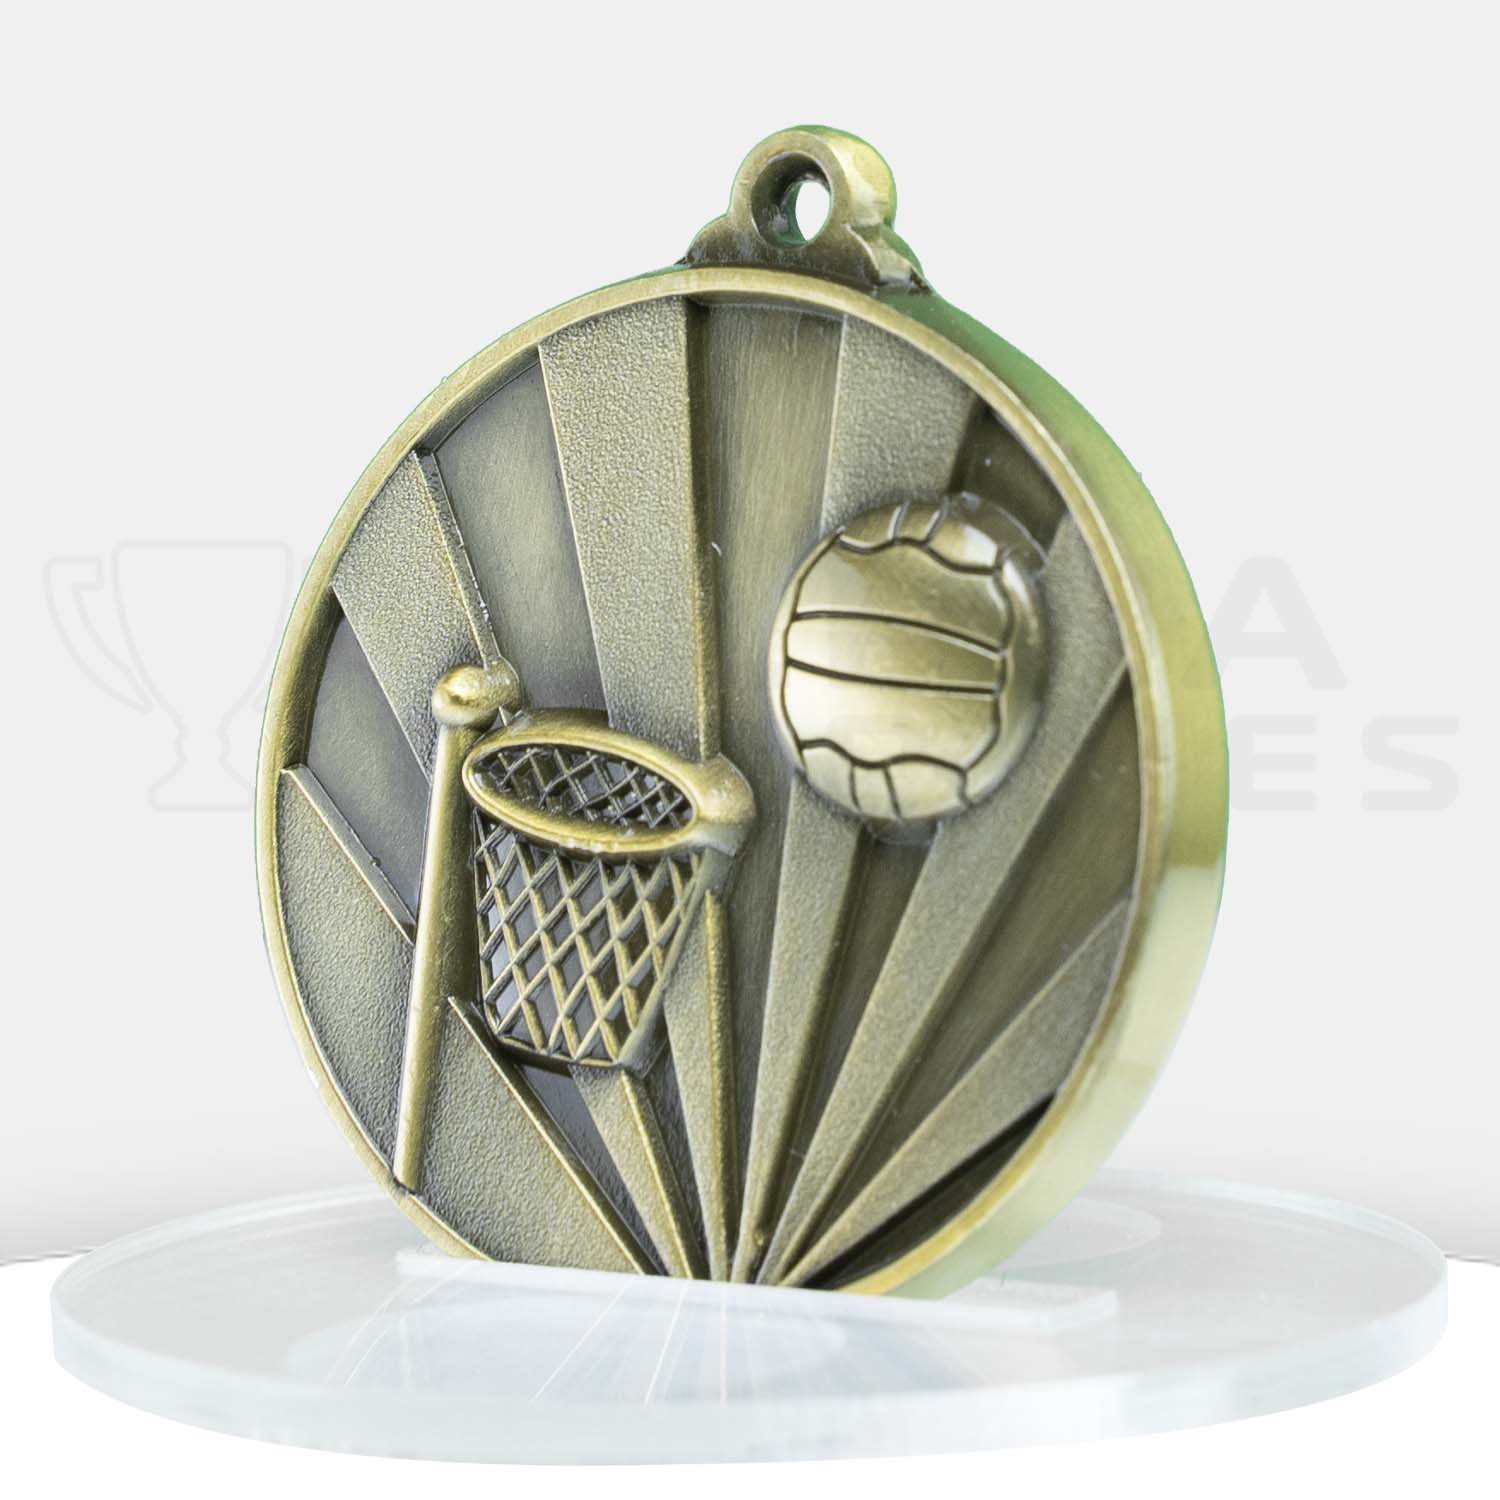 sunrise-medal-netball-gold-1077-8g-side